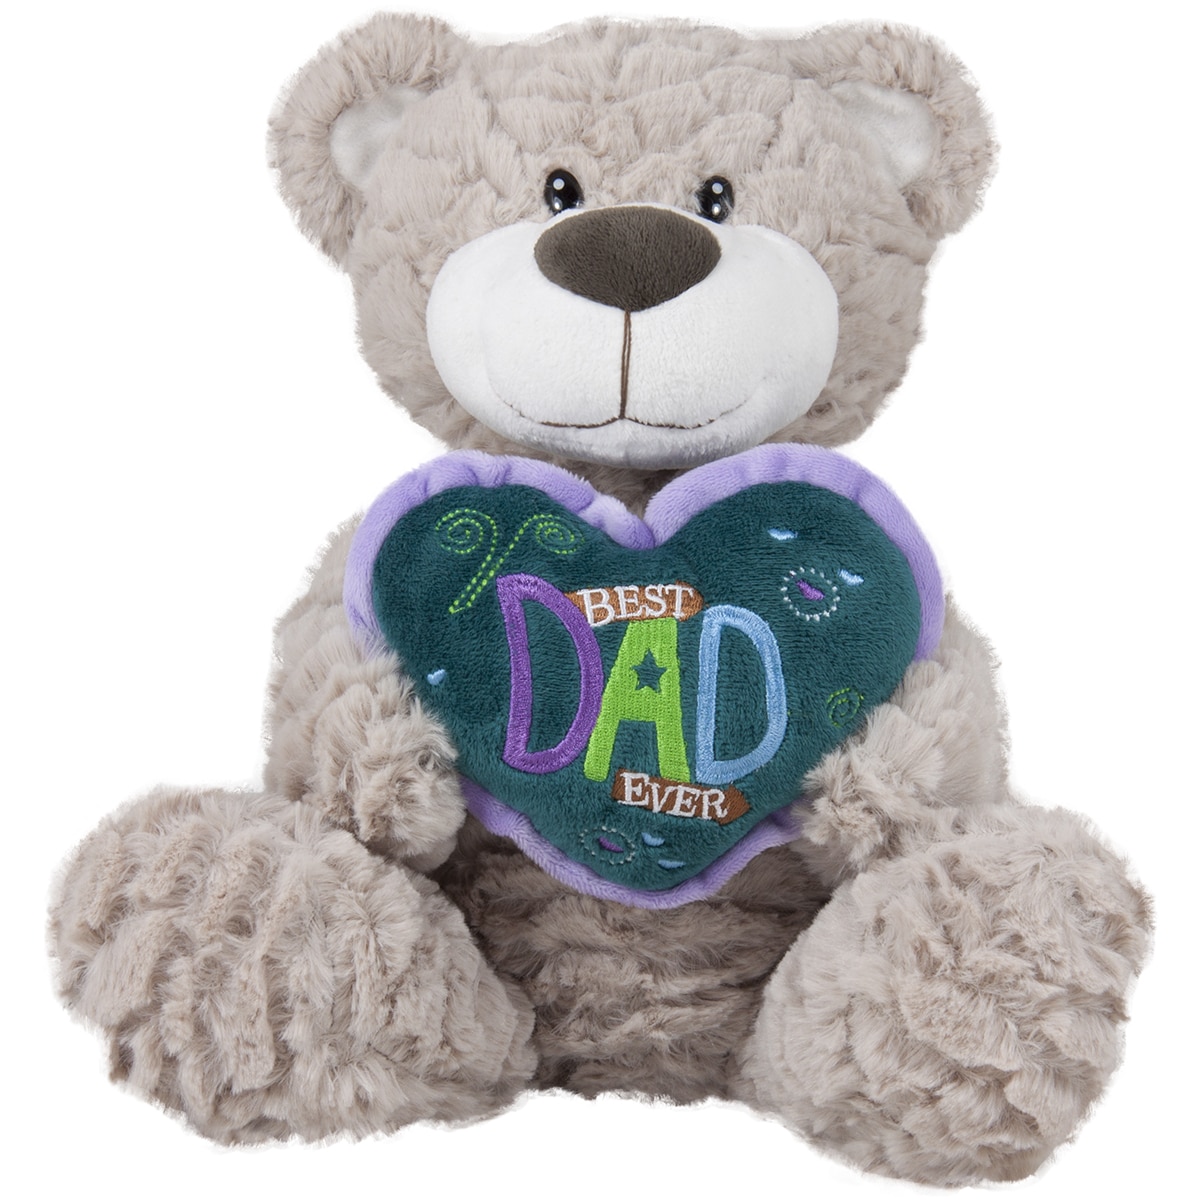 Teddy bear with a heart